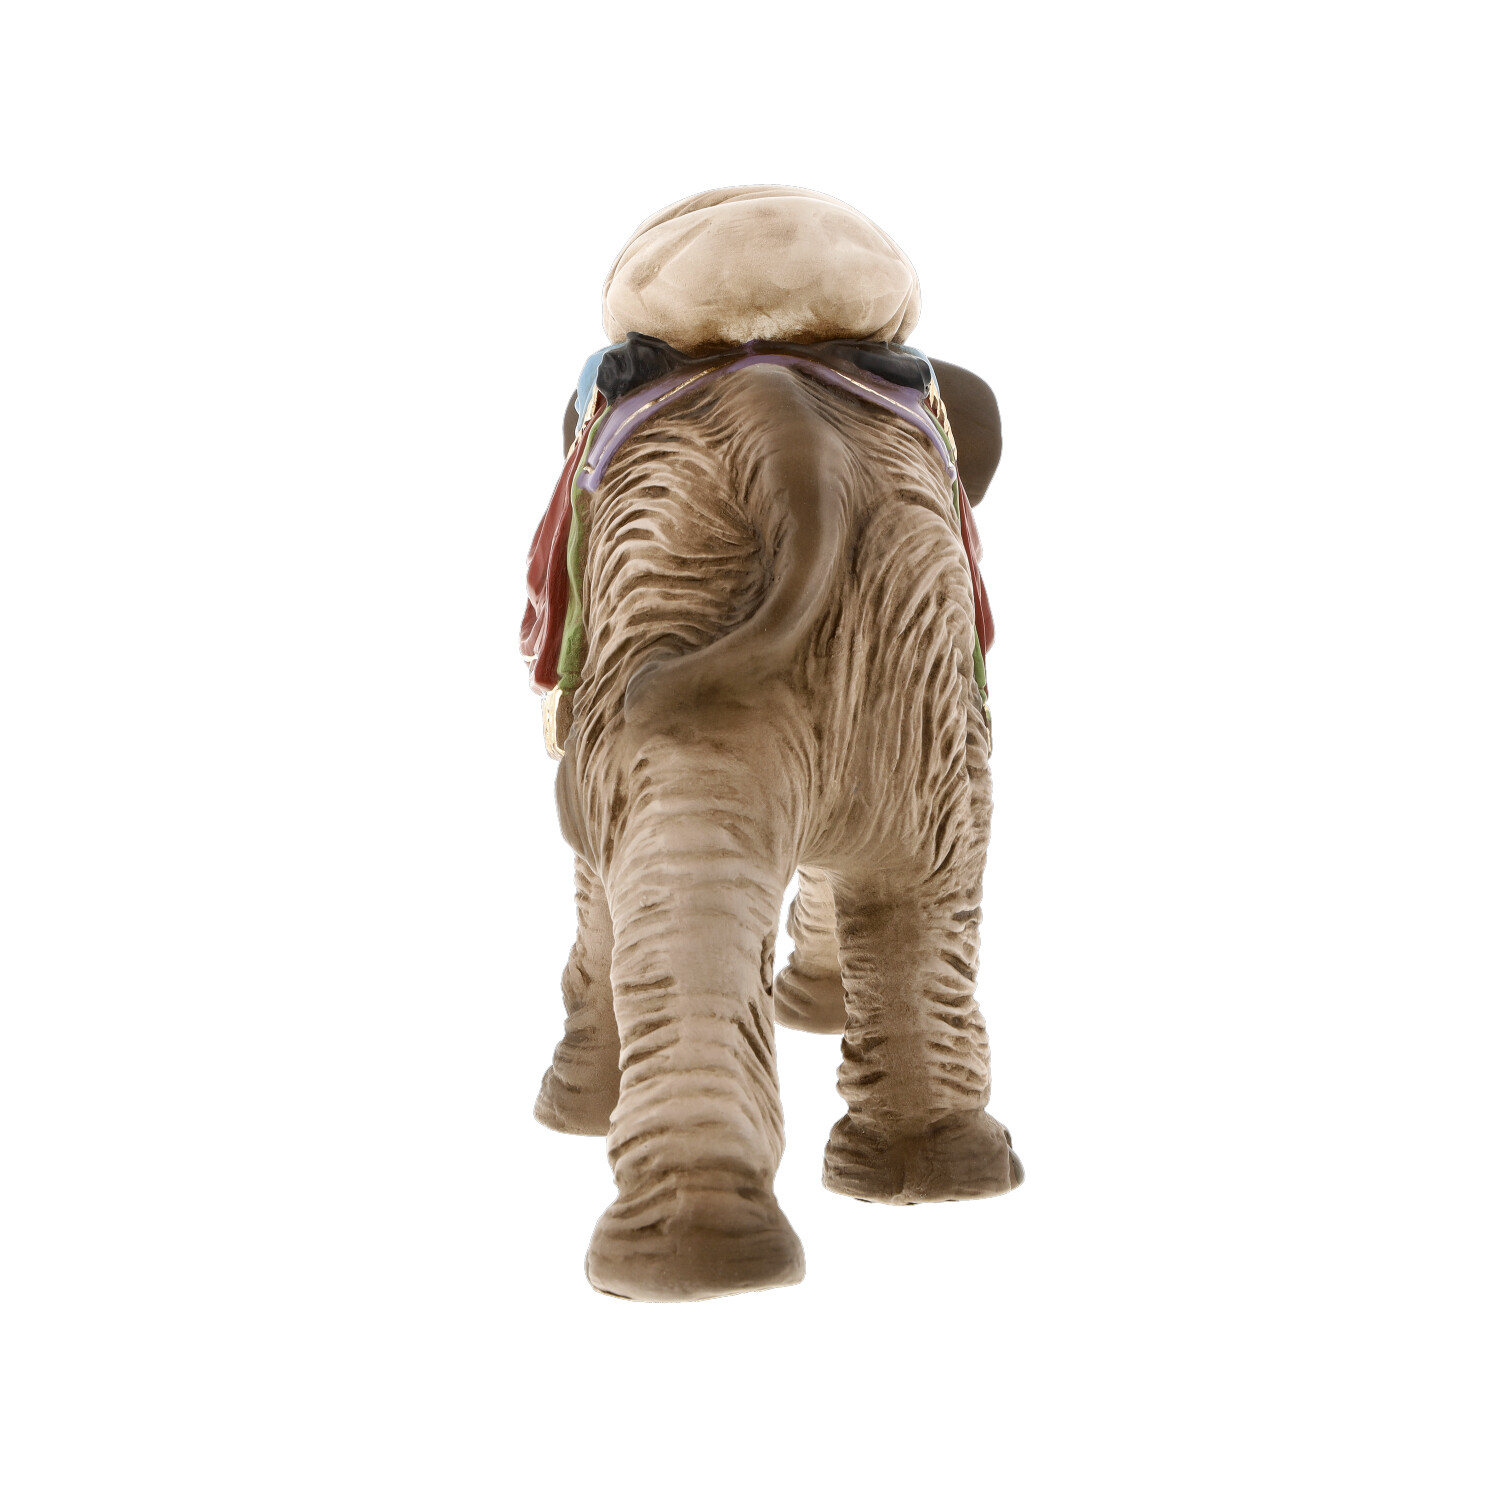 Elefant mit Gepäck, zu 12 - 14cm Marolin Krippenfiguren - made in Germany